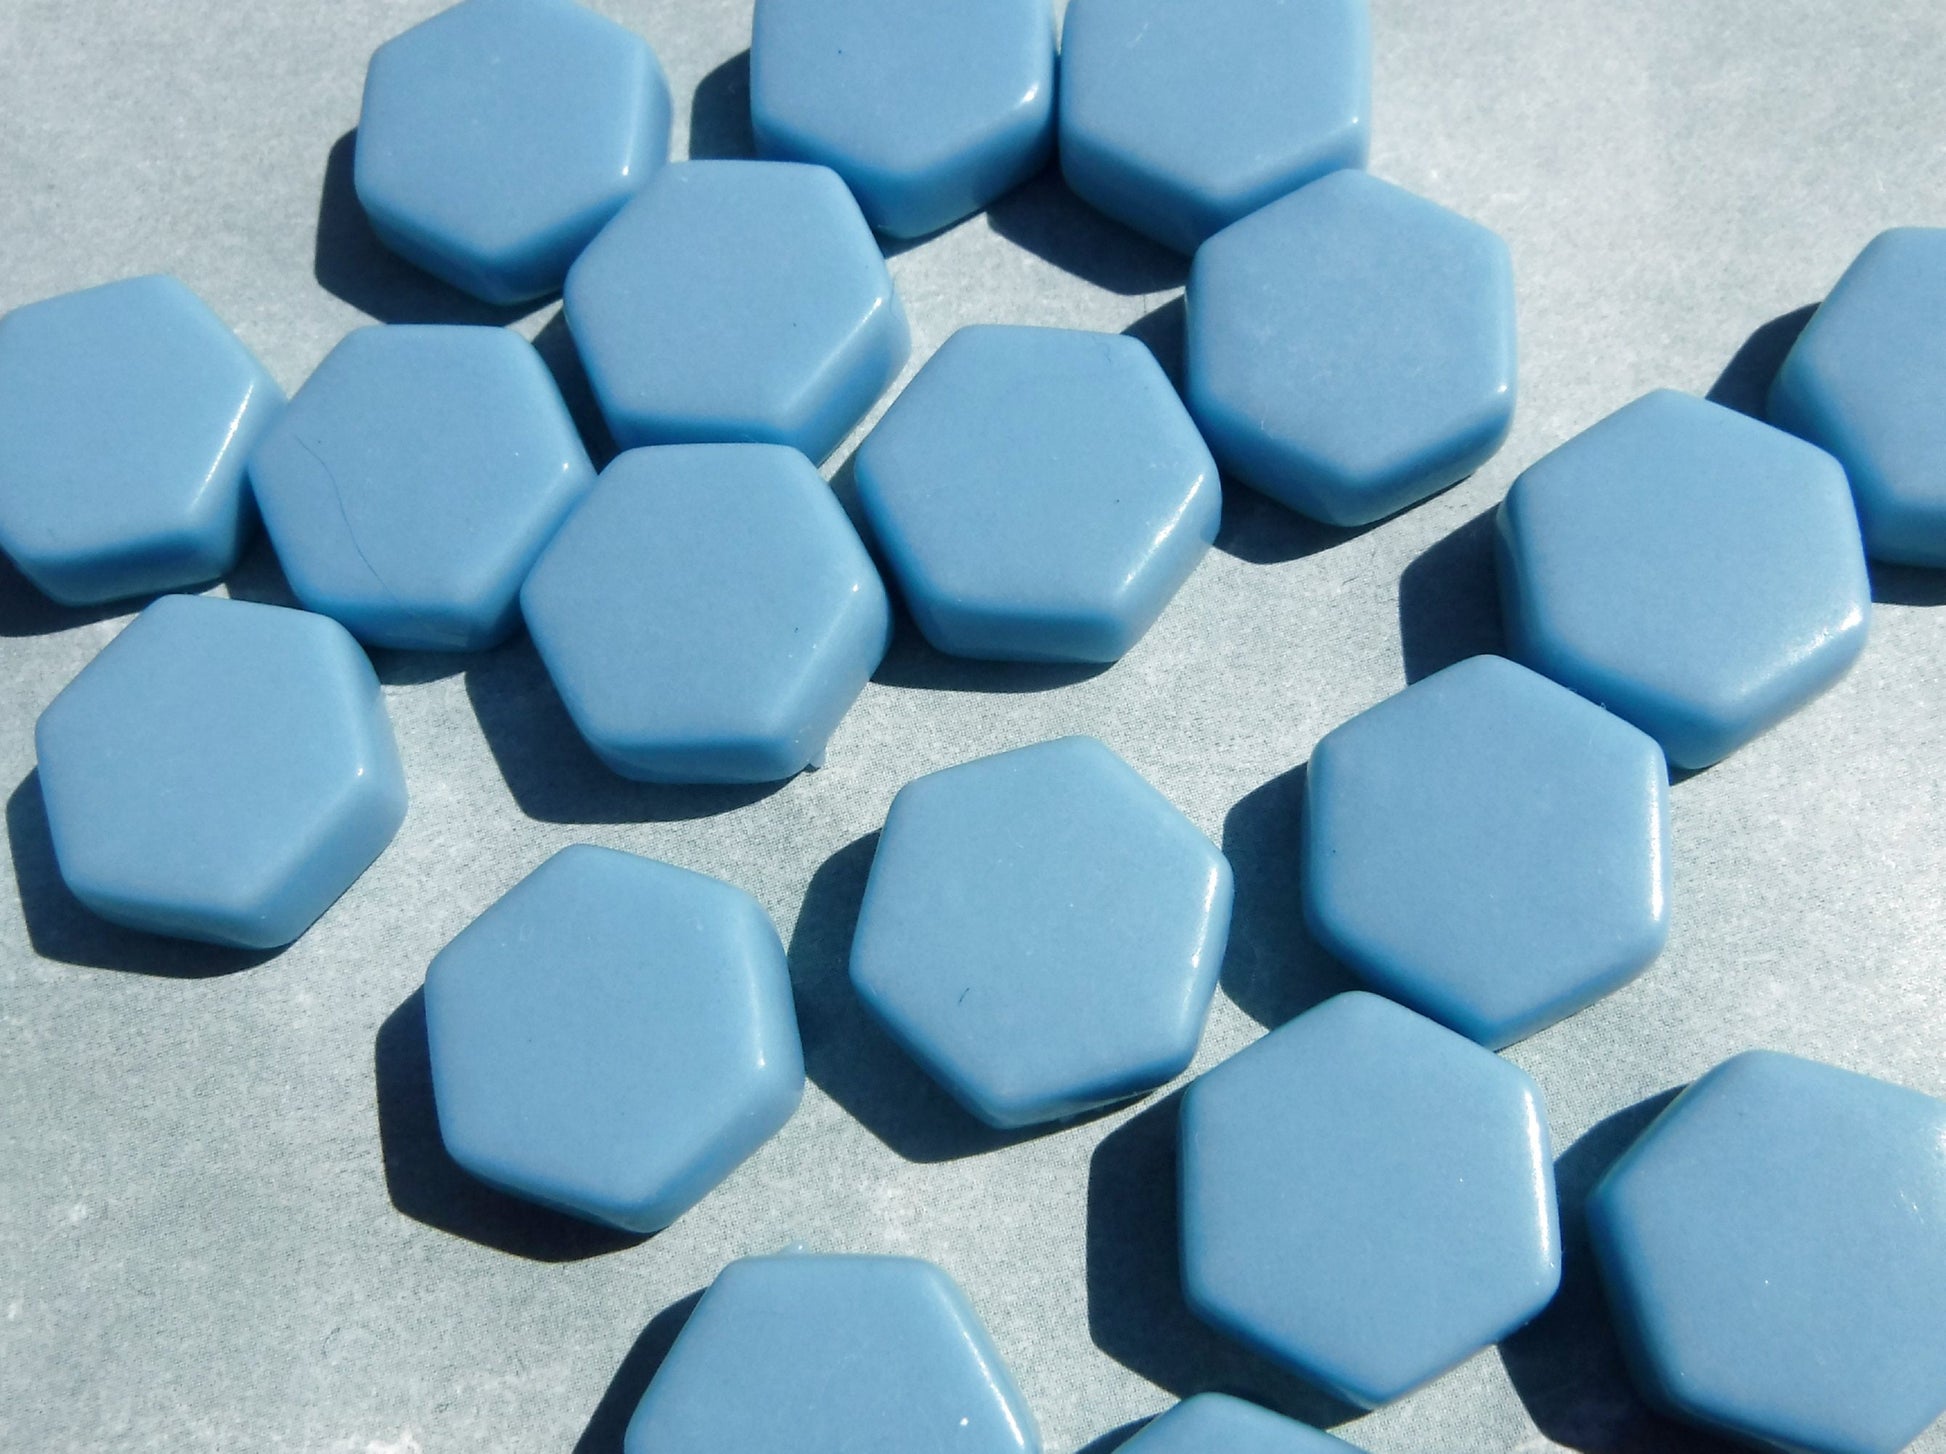 Light Blue Hexagon Mosaic Tiles - 15mm - 100g Opaque Glass Tiles in Hawaiian Blue